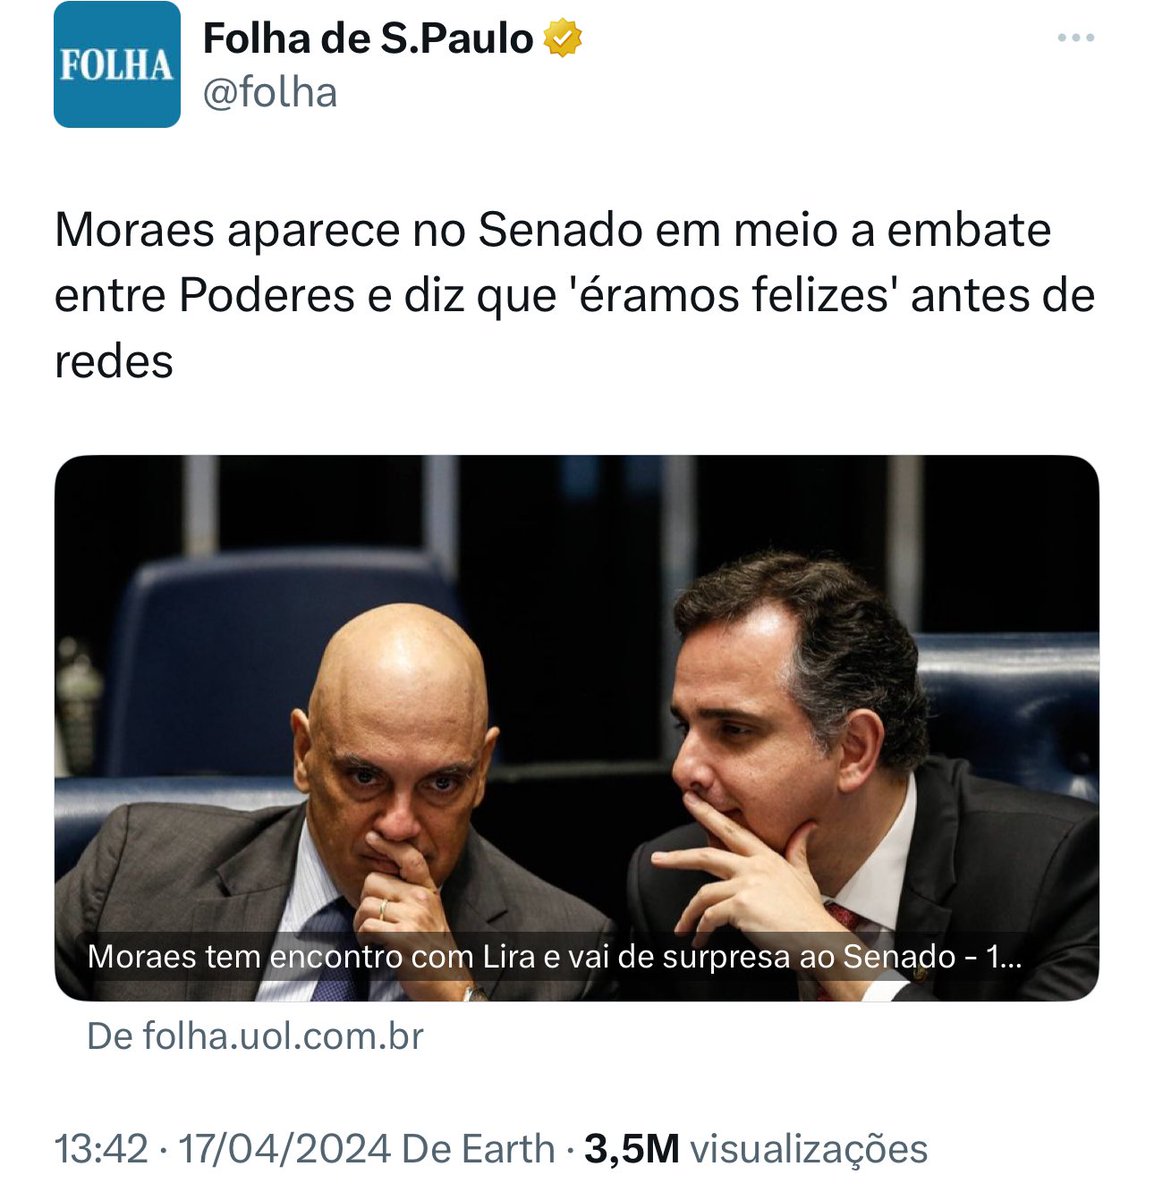 Para tipos como o senhor ministro Brasília era um mar de rosas e de amor sem a cobrança popular, sem o exercício pleno da cidadania. Fica claro que eles querem o CONTROLE, não querem ser questionados e nem criticados.